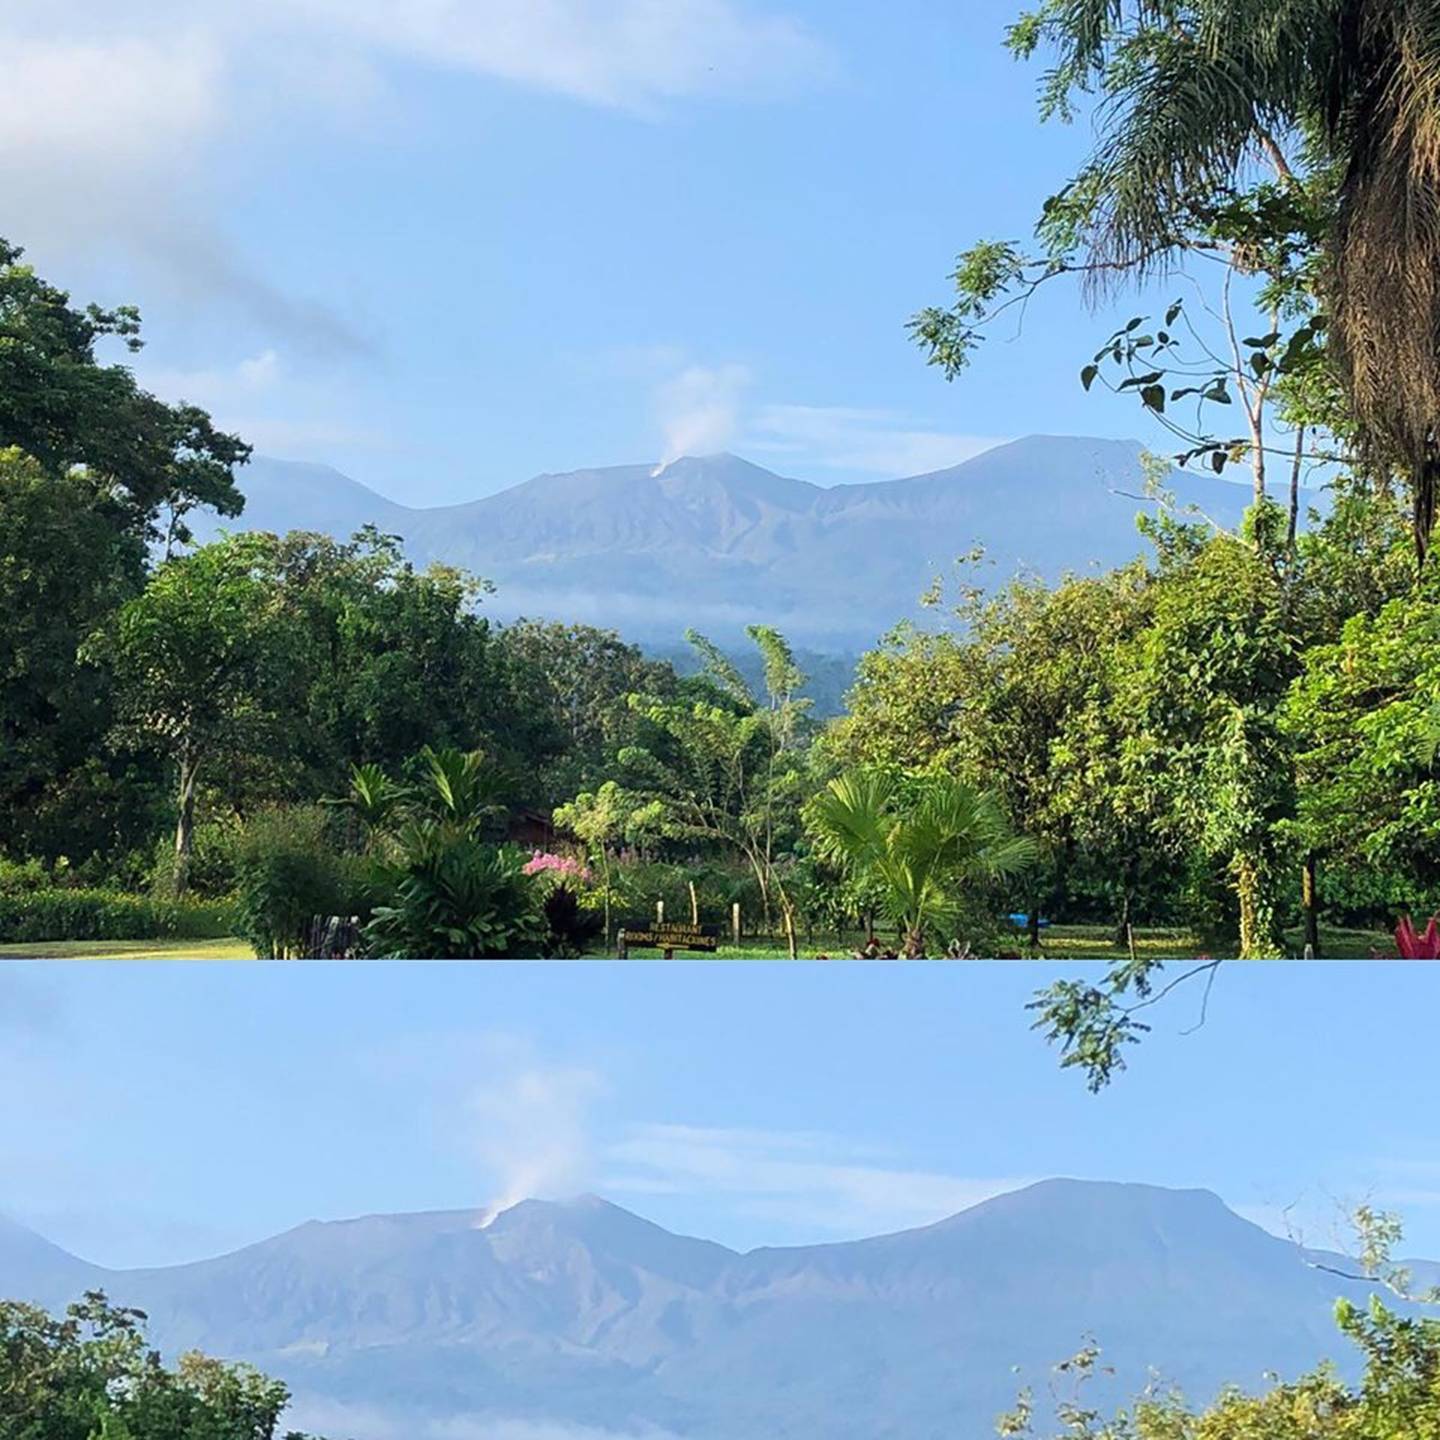 Volcán Rincón de la Vieja lanza columnas de gases y vapor de agua el viernes 20 de setiembre del 2019